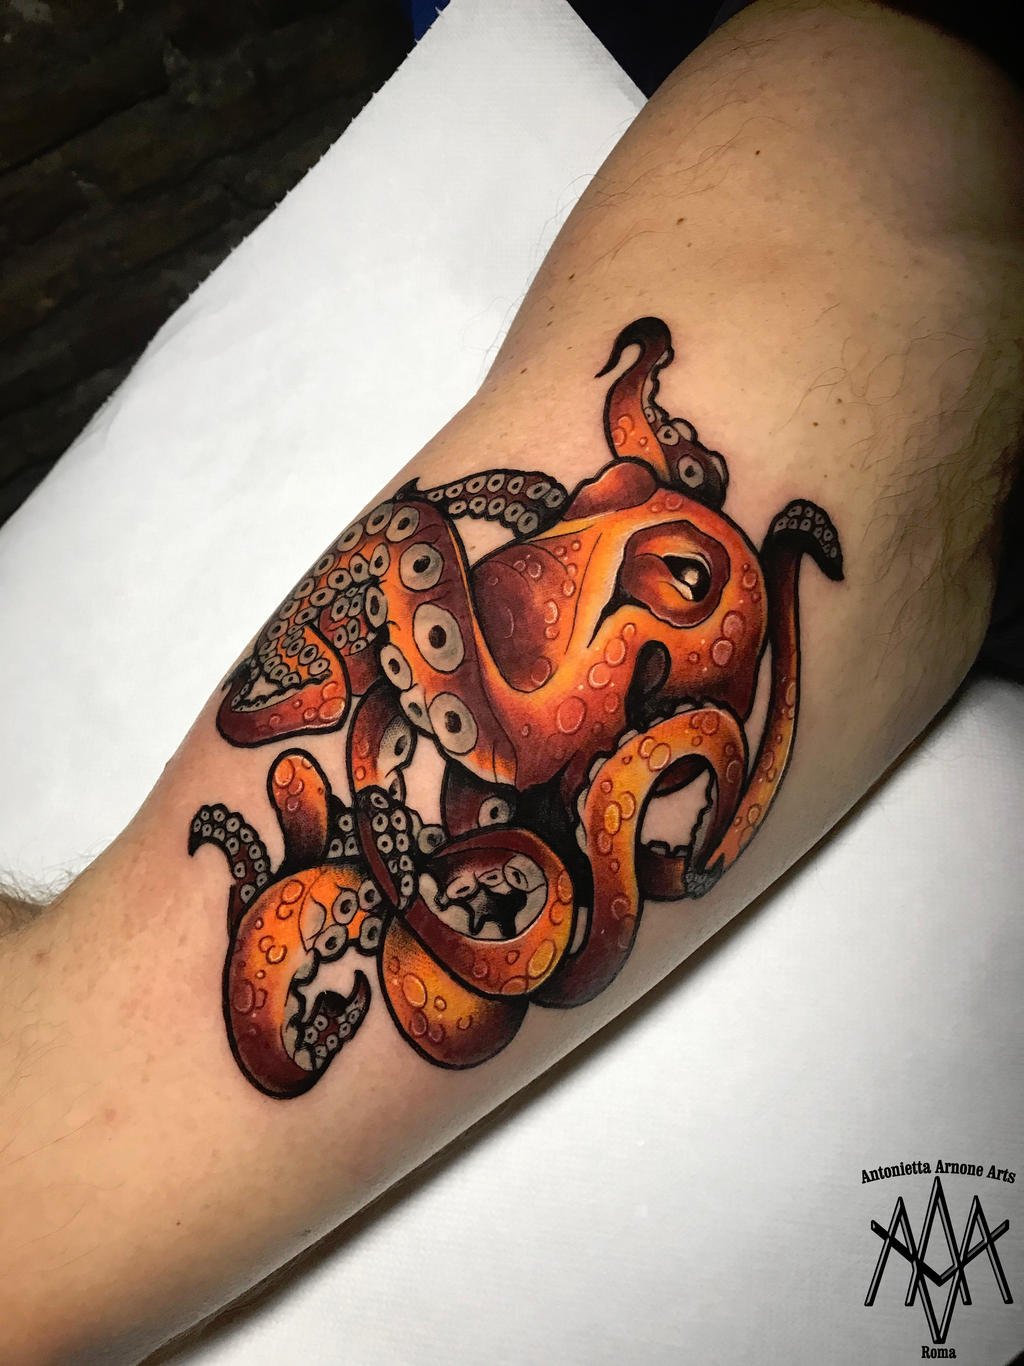 Octopus tattoo by AntoniettaArnoneArts on DeviantArt